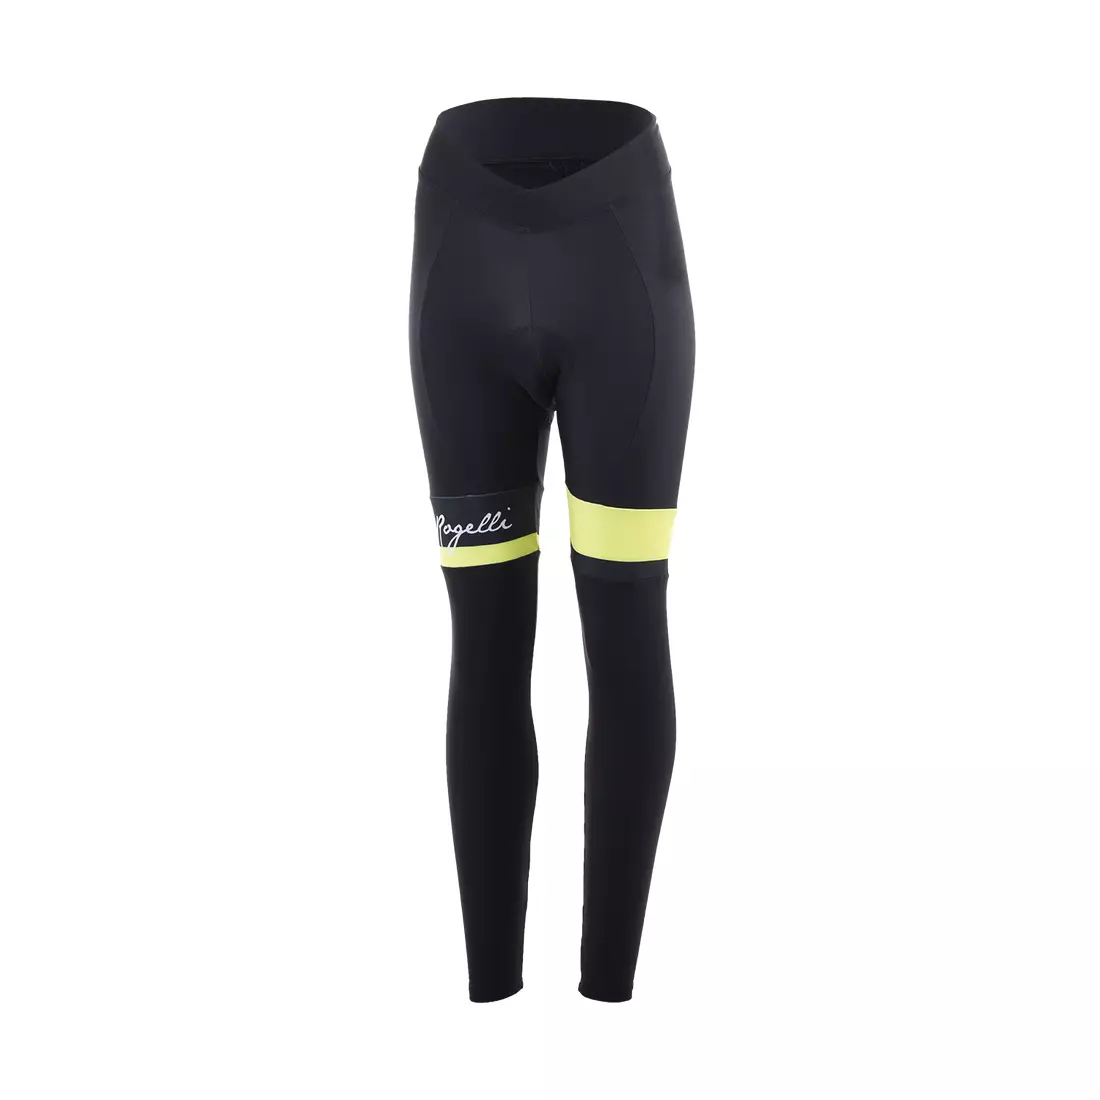 ROGELLI zimowe spodnie rowerowe damskie SELECT black/yellow